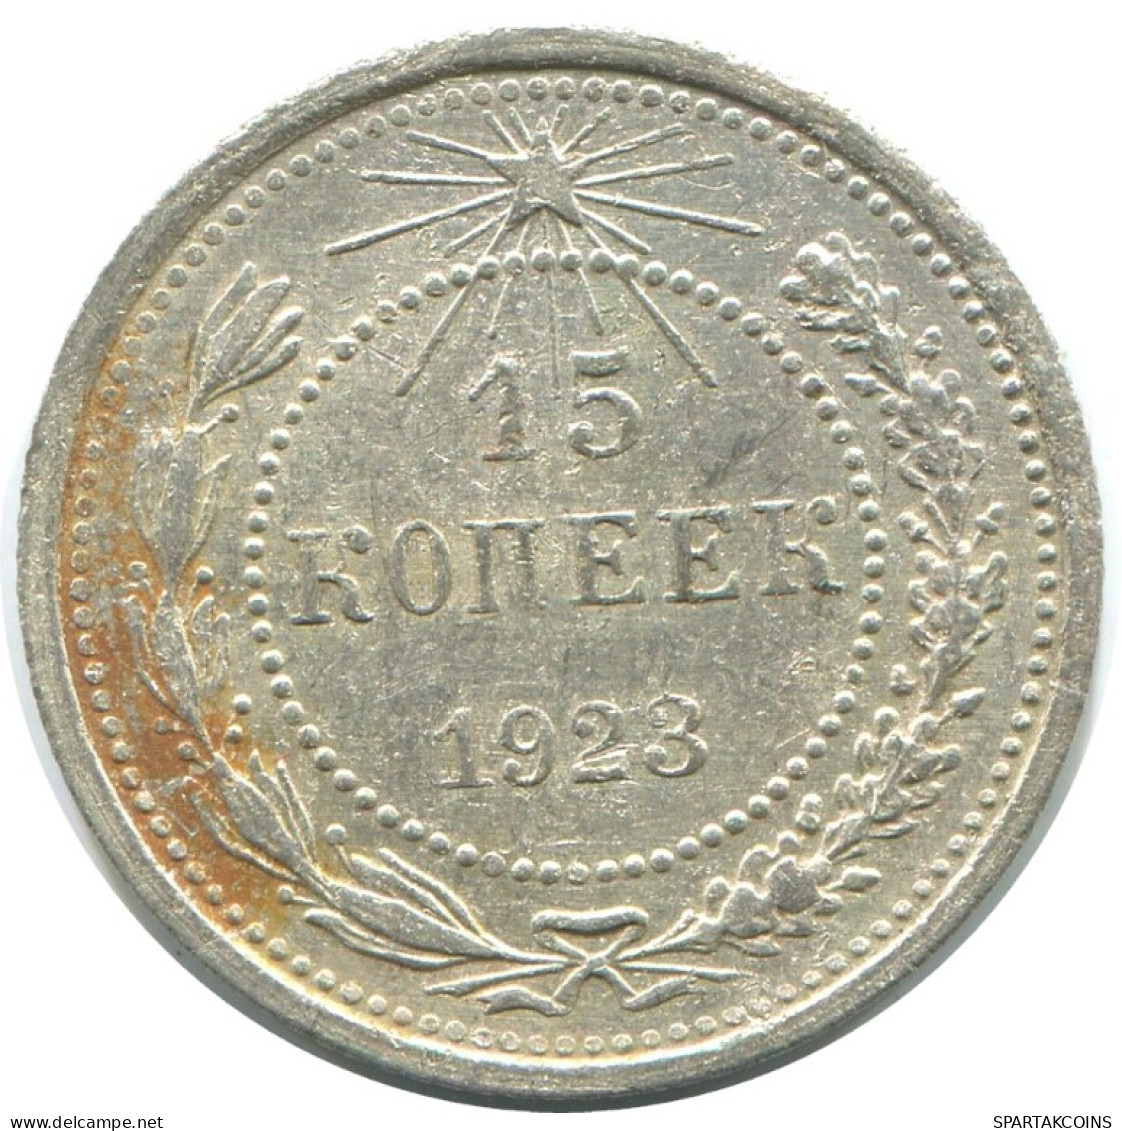 15 KOPEKS 1923 RUSSIA RSFSR SILVER Coin HIGH GRADE #AF129.4.U.A - Russland